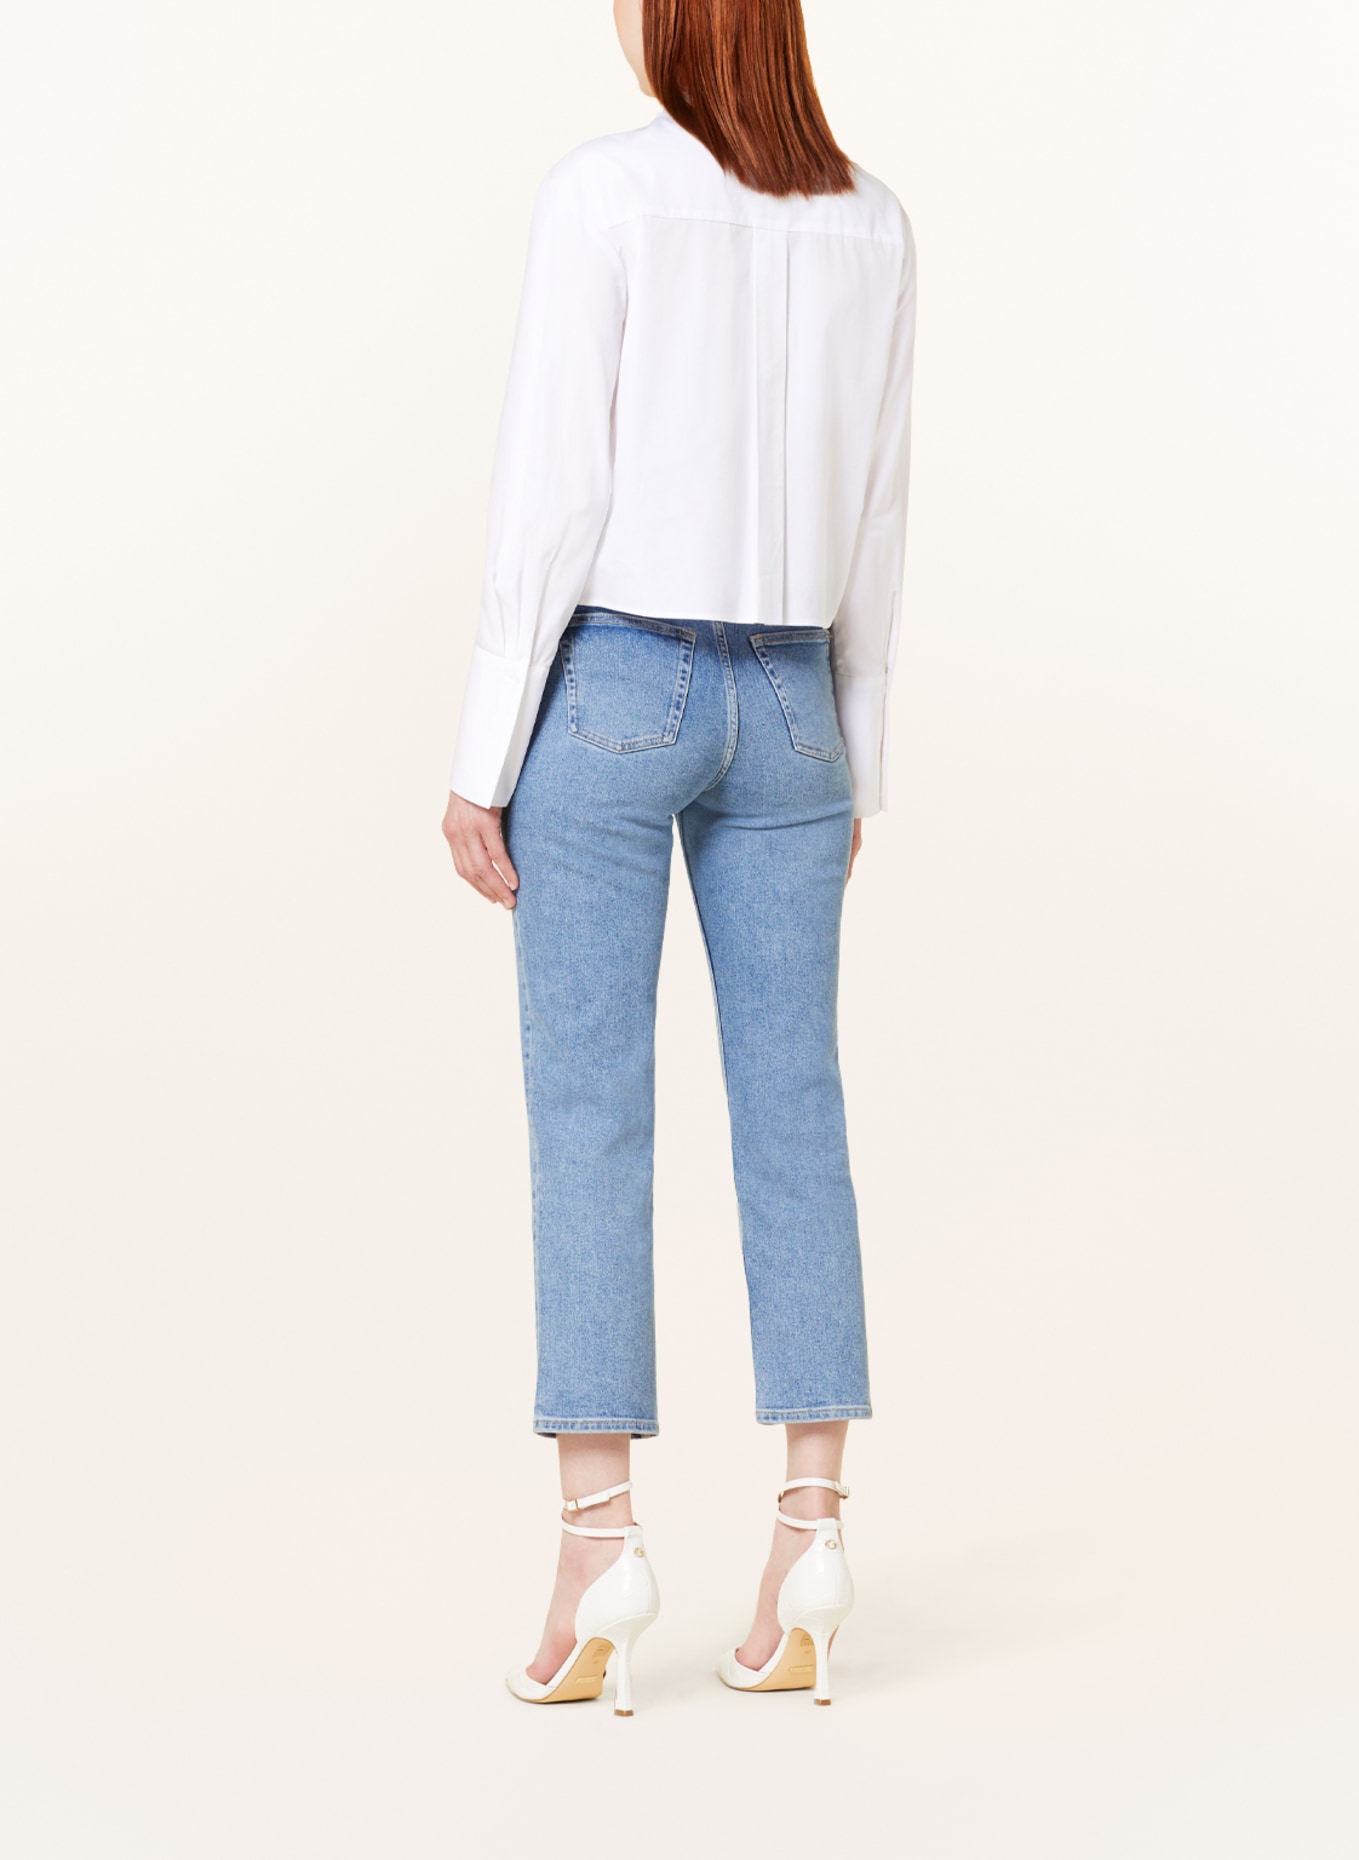 EVA MANN Cropped shirt blouse GITTE WINSTON, Color: WHITE (Image 3)